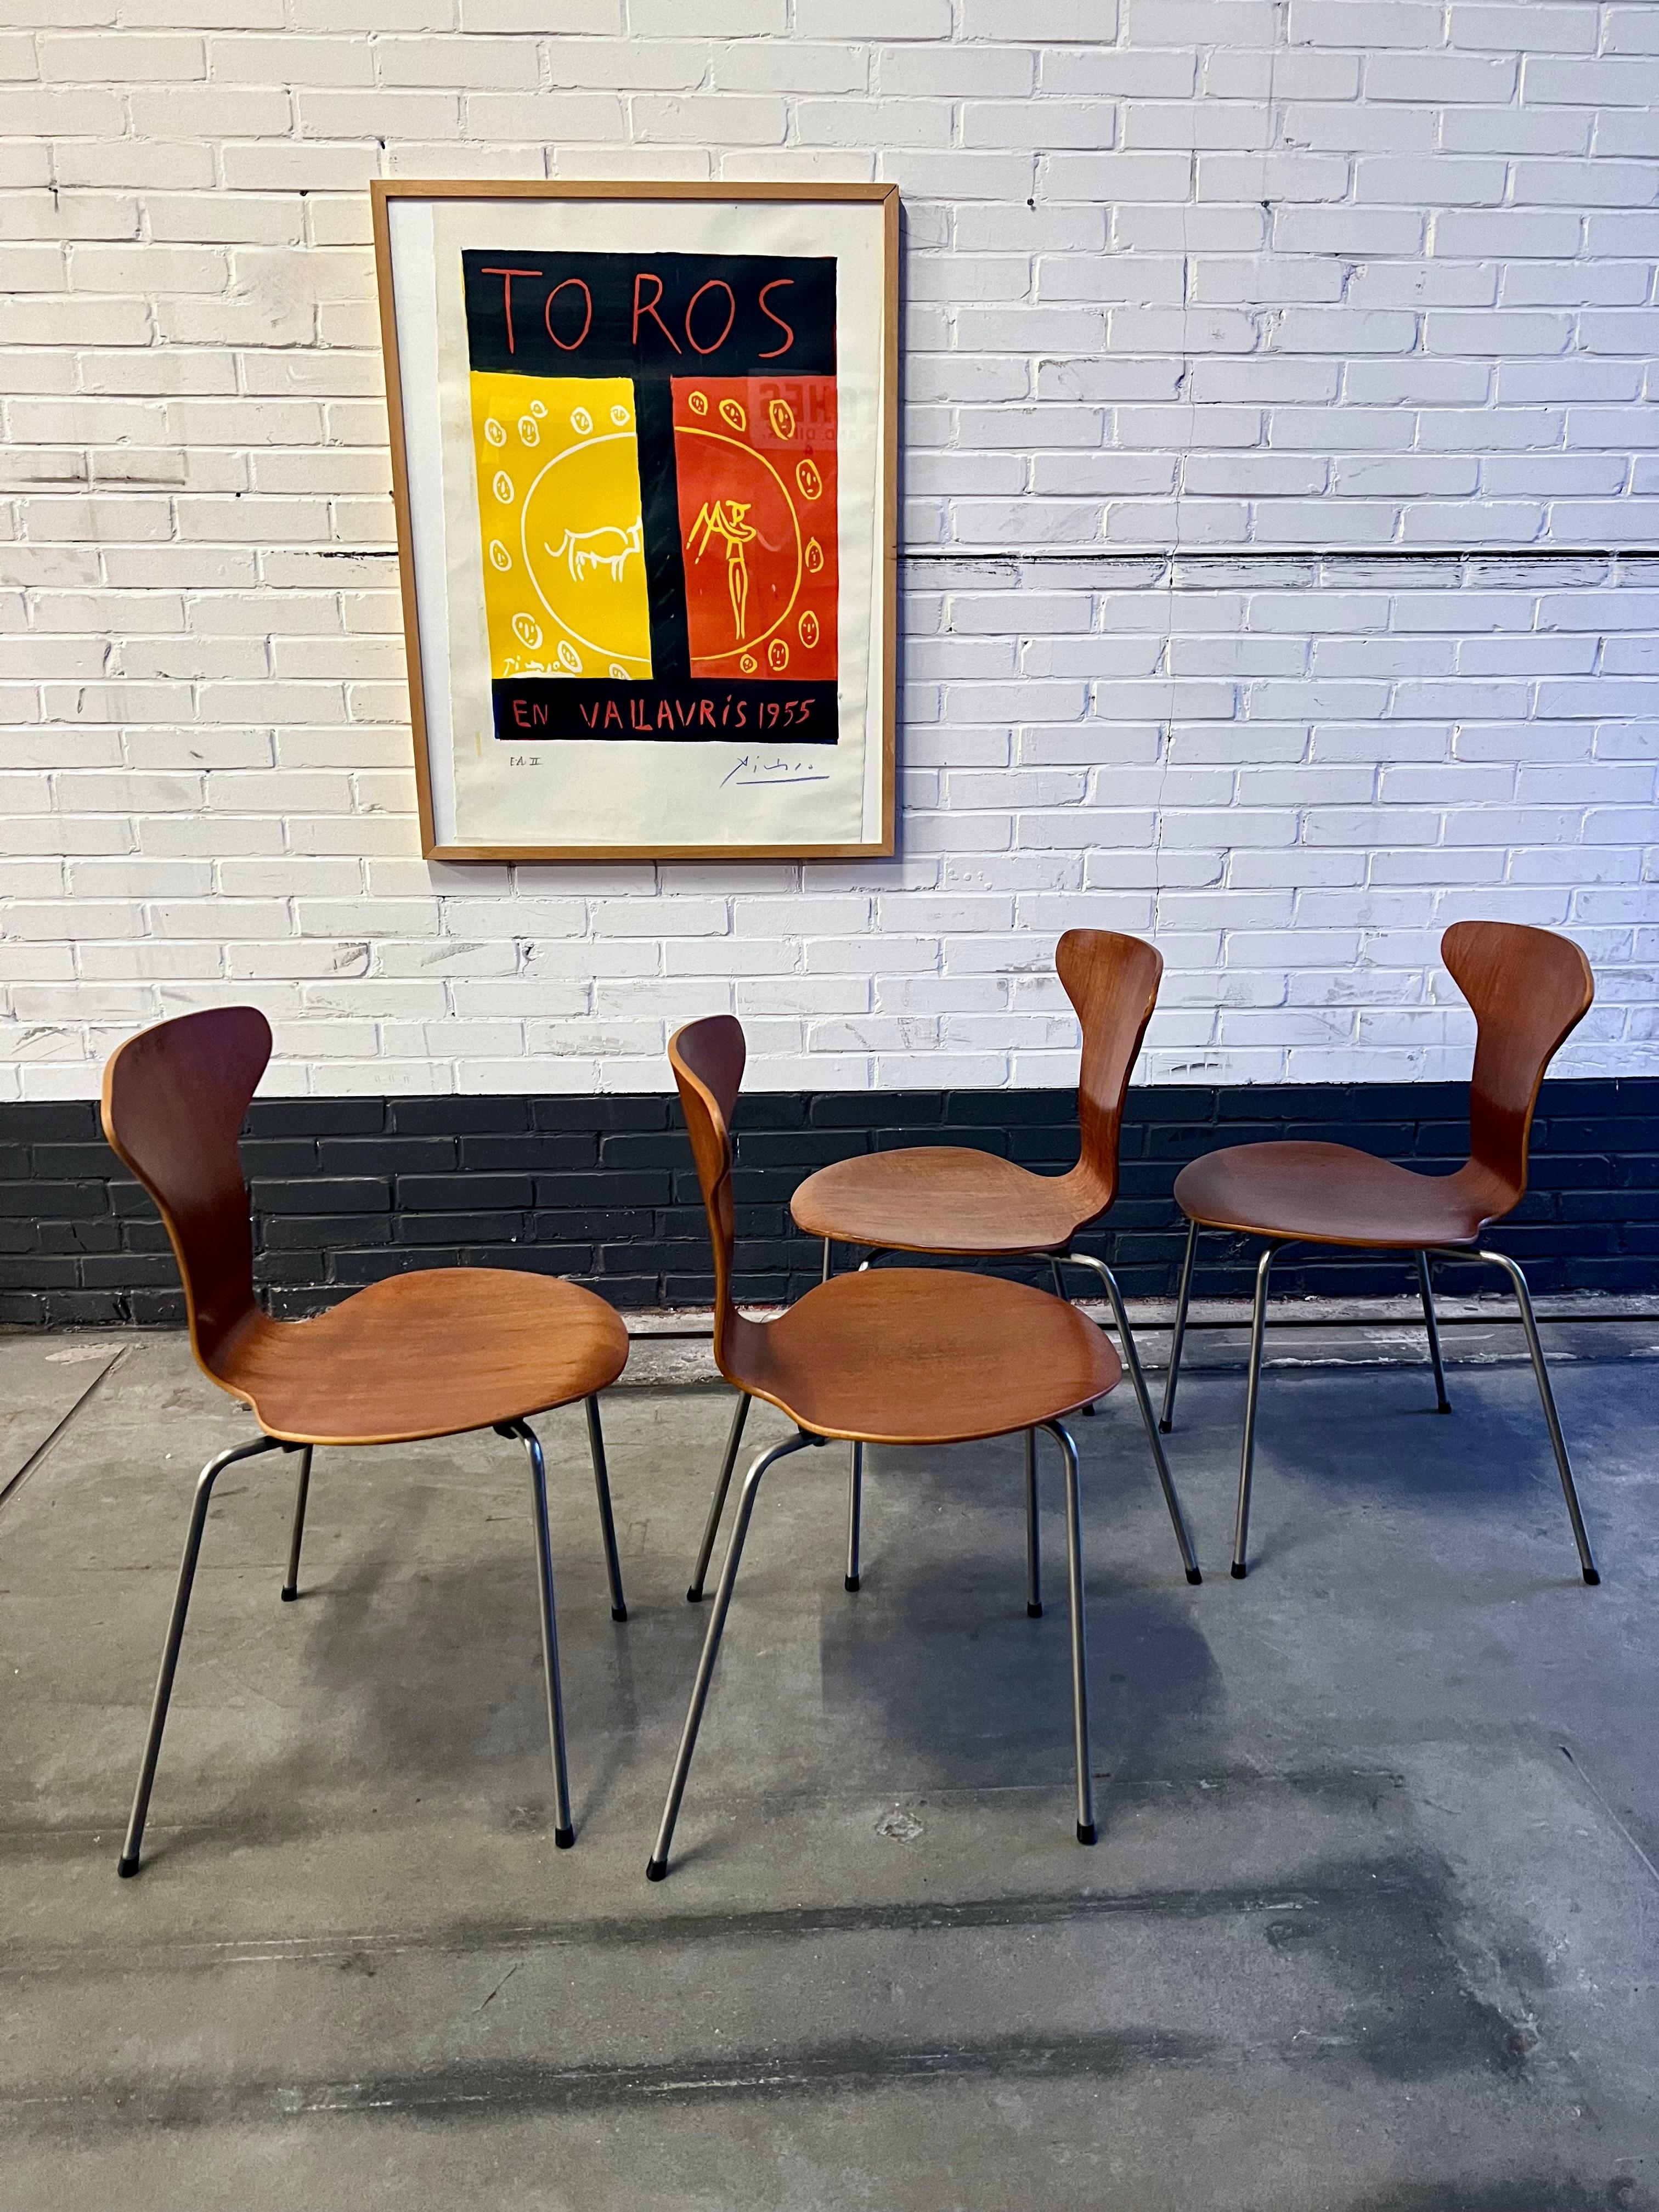 Très ancienne et rare édition (1957 !) de la chaise 'Munkegaard' d'Arne Jacobsen produite par Fritz Hansen. Finition en teck avec structure en acier poli. Il s'agit de l'édition avec le bouchon en métal portant l'inscription 